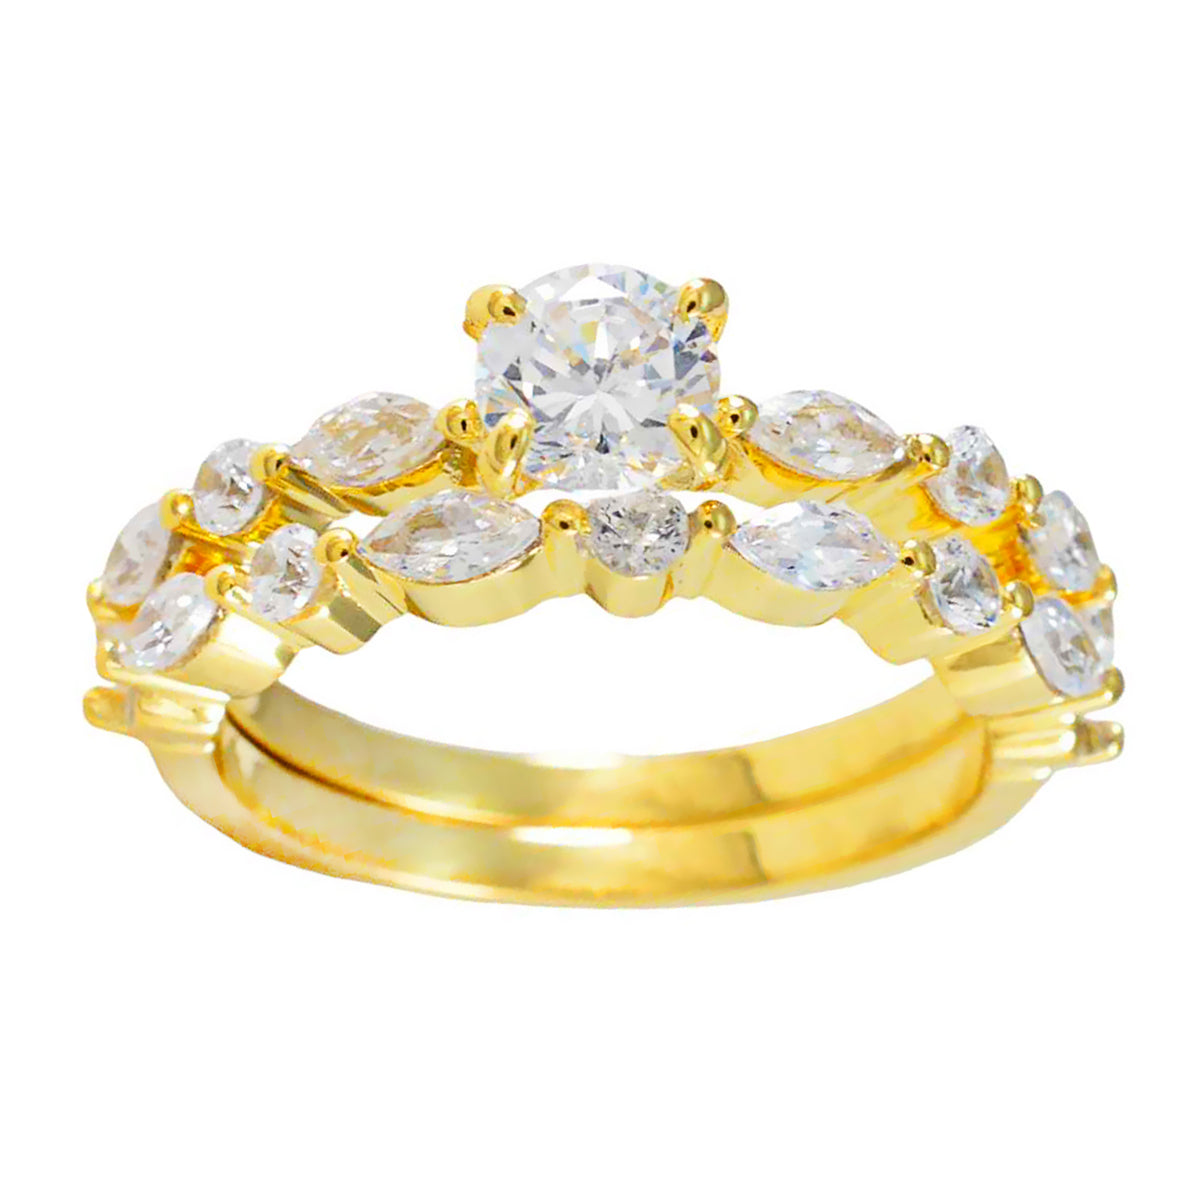 Riyo Seltener Silberring mit gelbvergoldetem, weißem CZ-Stein, Ring mit Krappenfassung in mehreren Formen